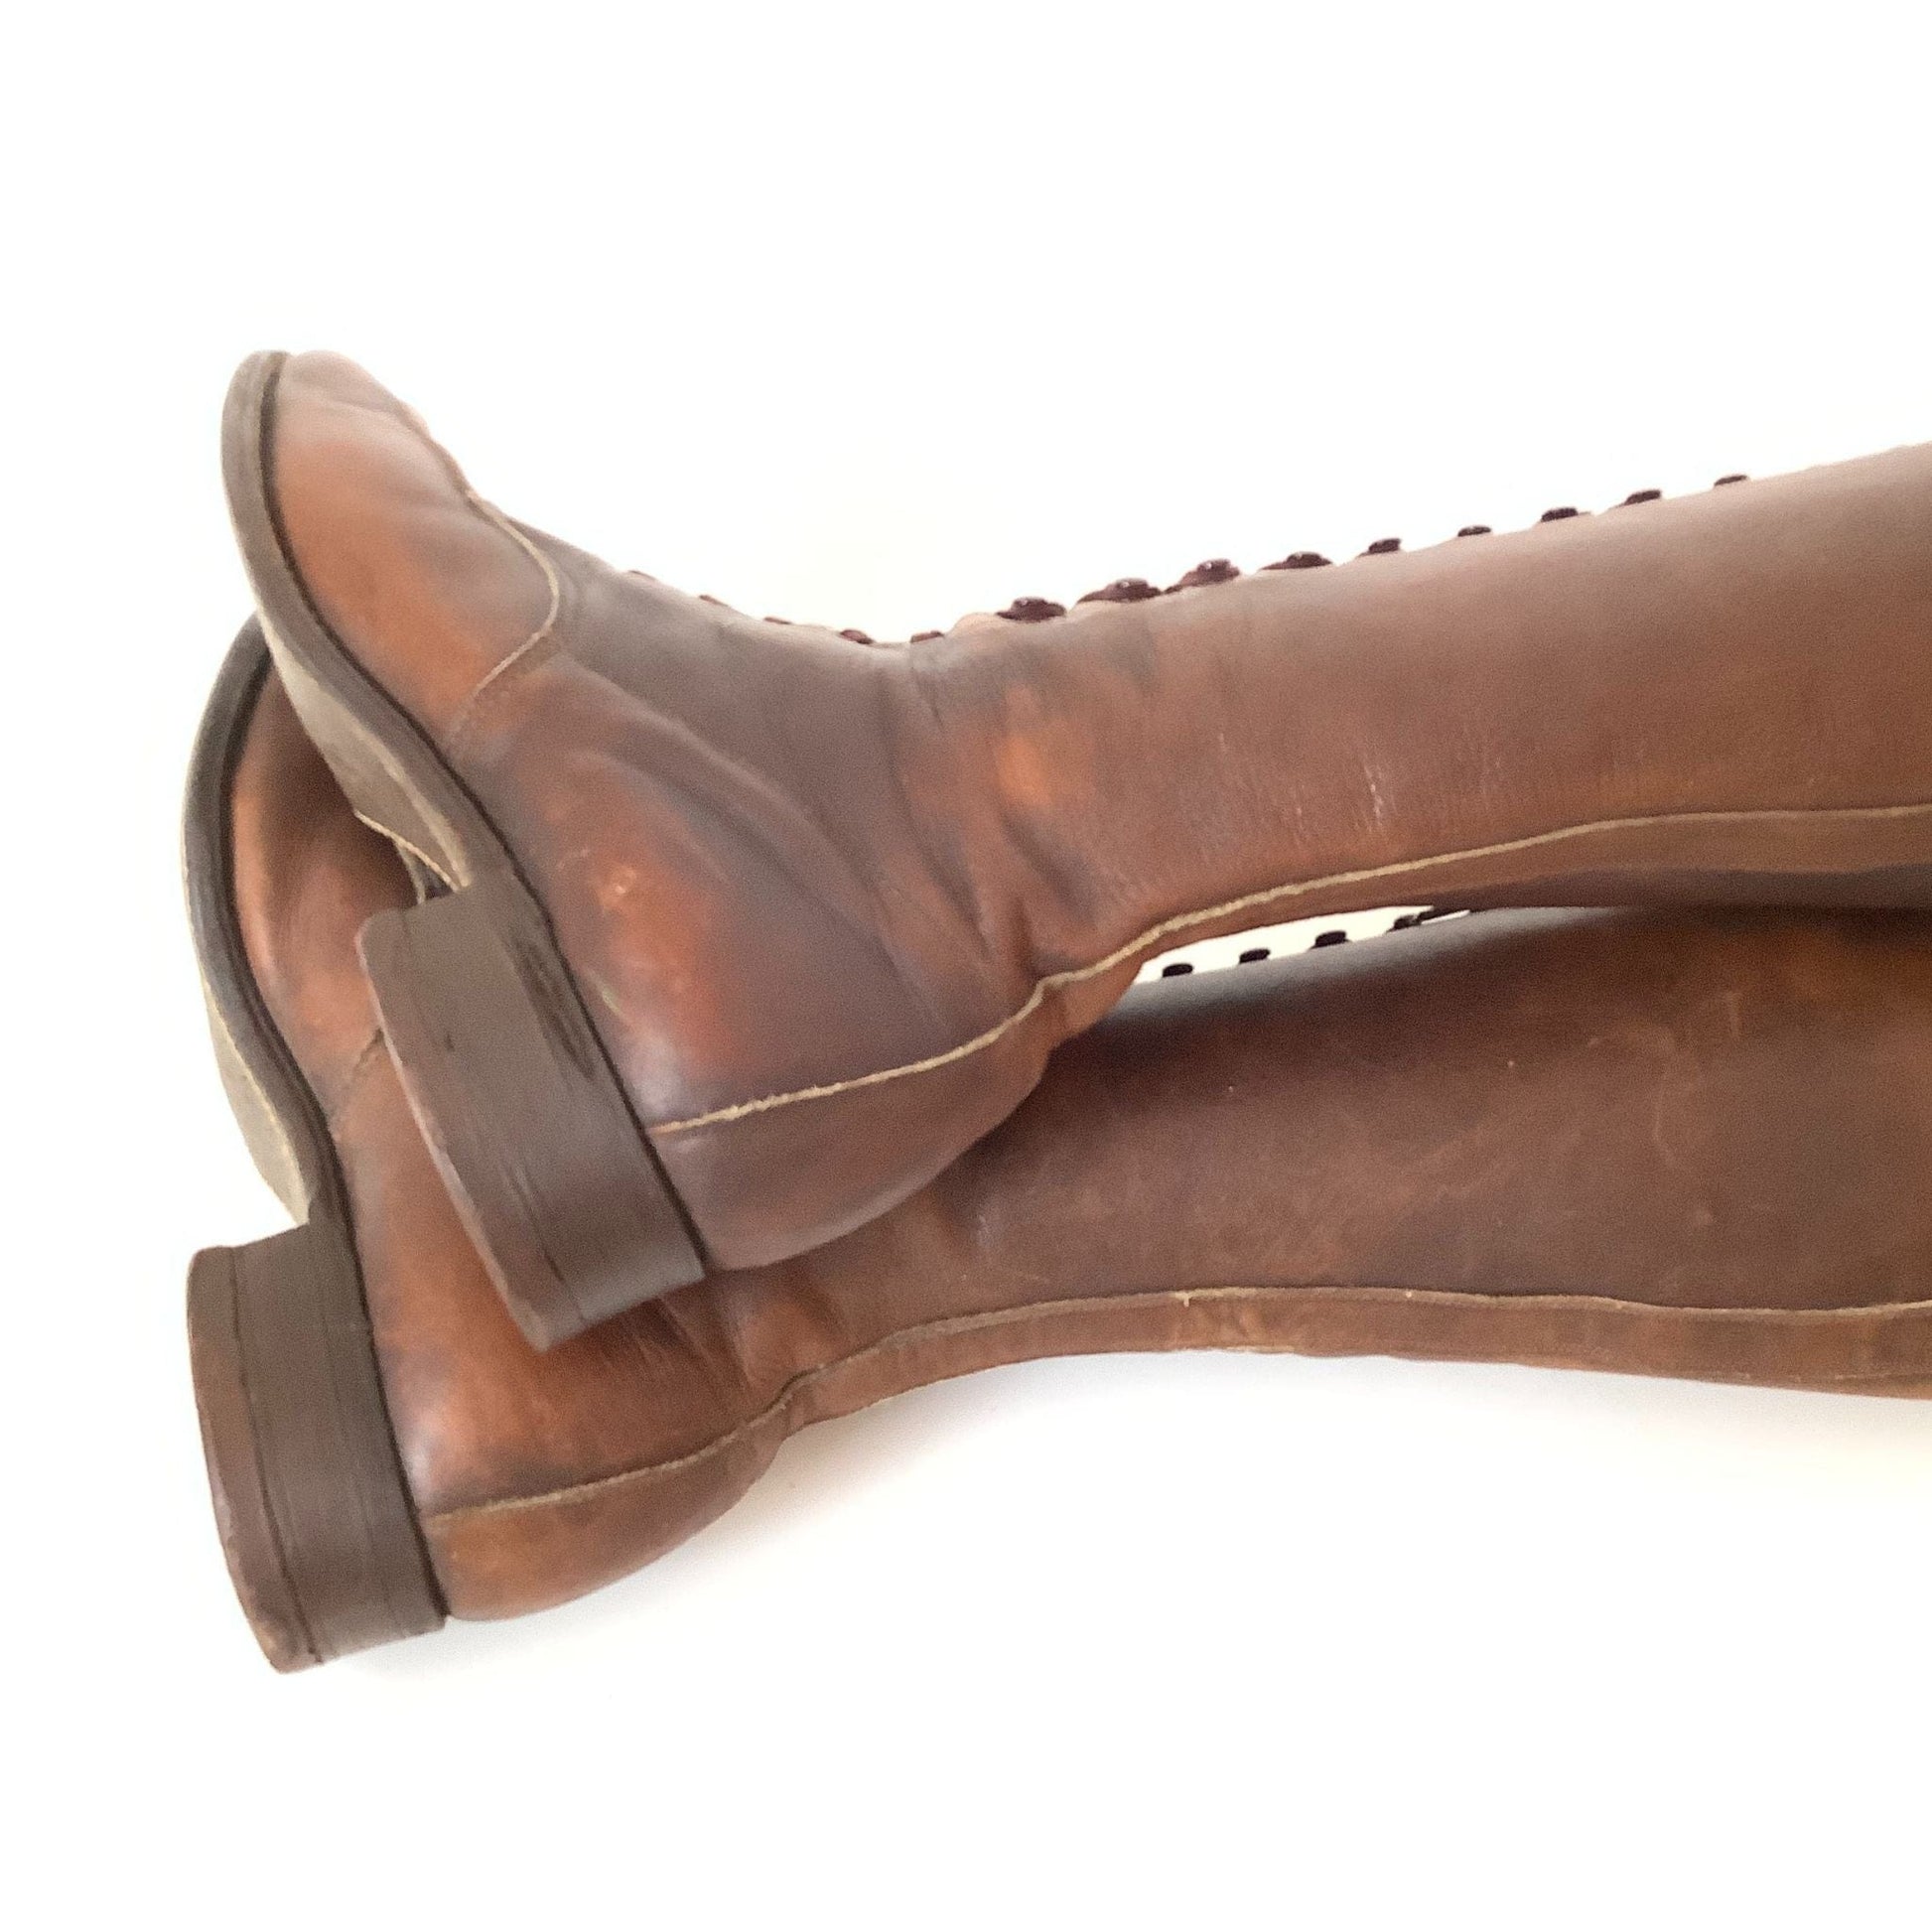 Antique Lace up Boots 7 / Brown / Vintage 1920s